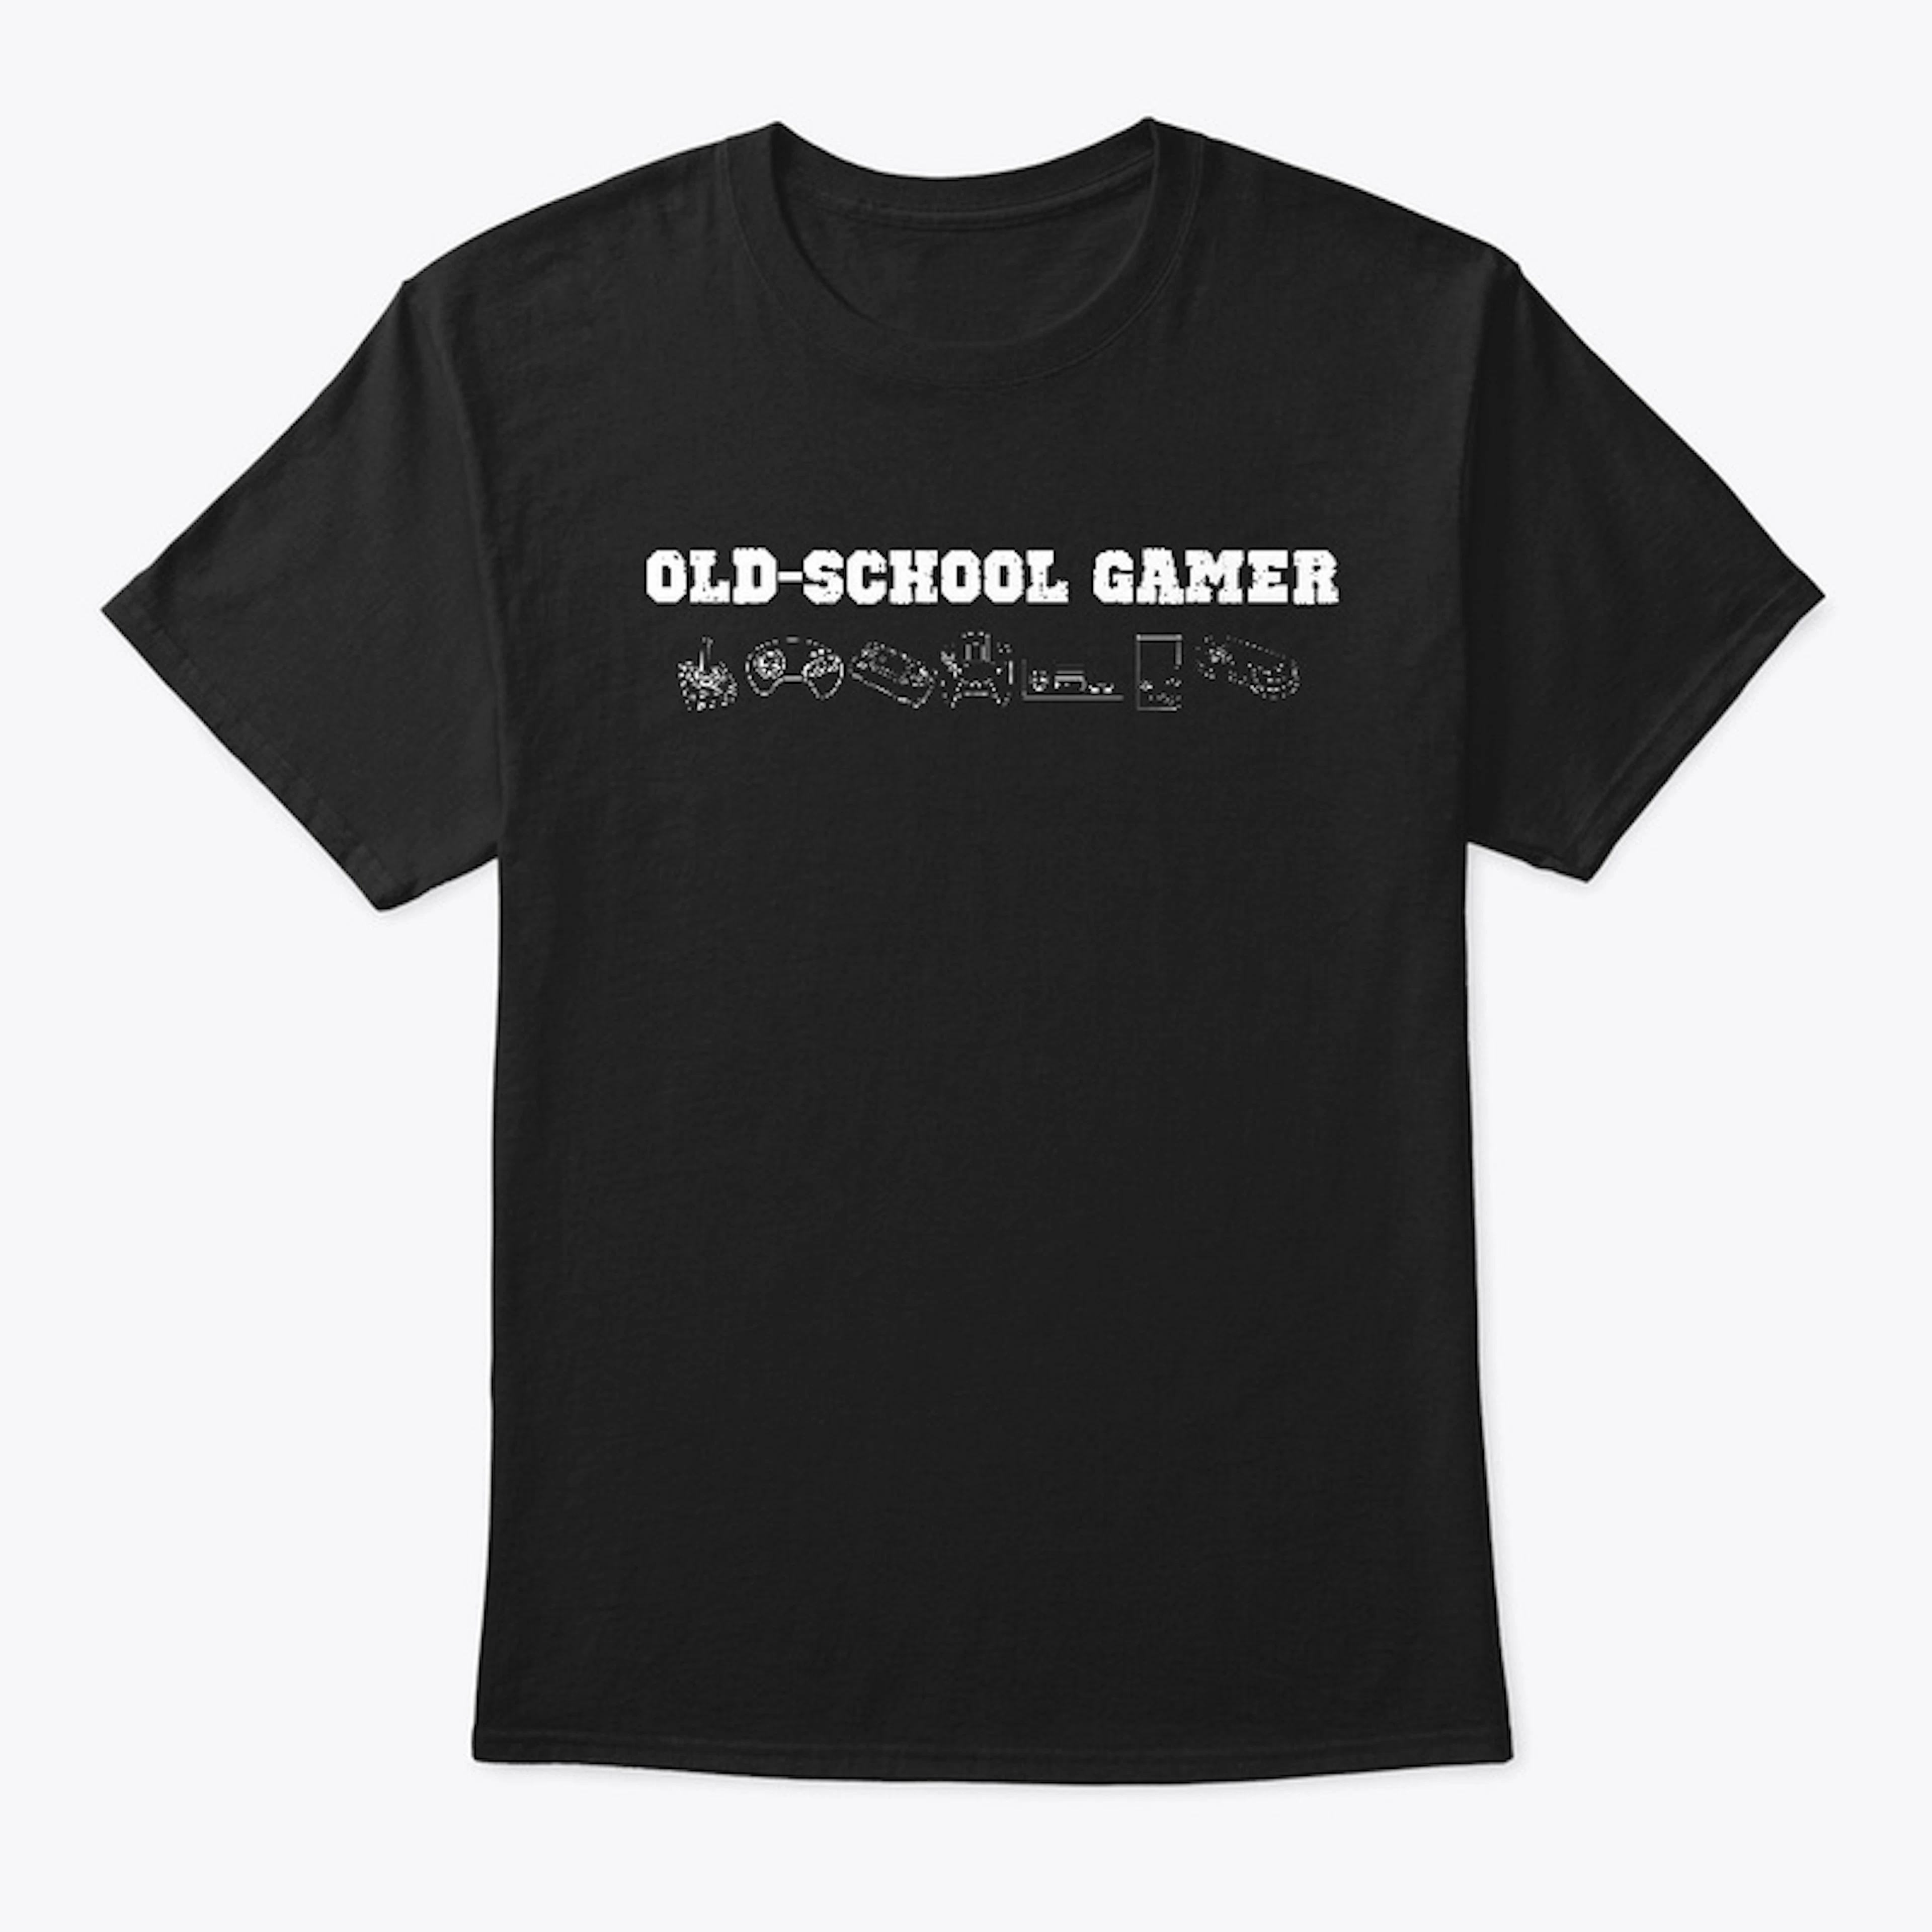 Old-School Gamer